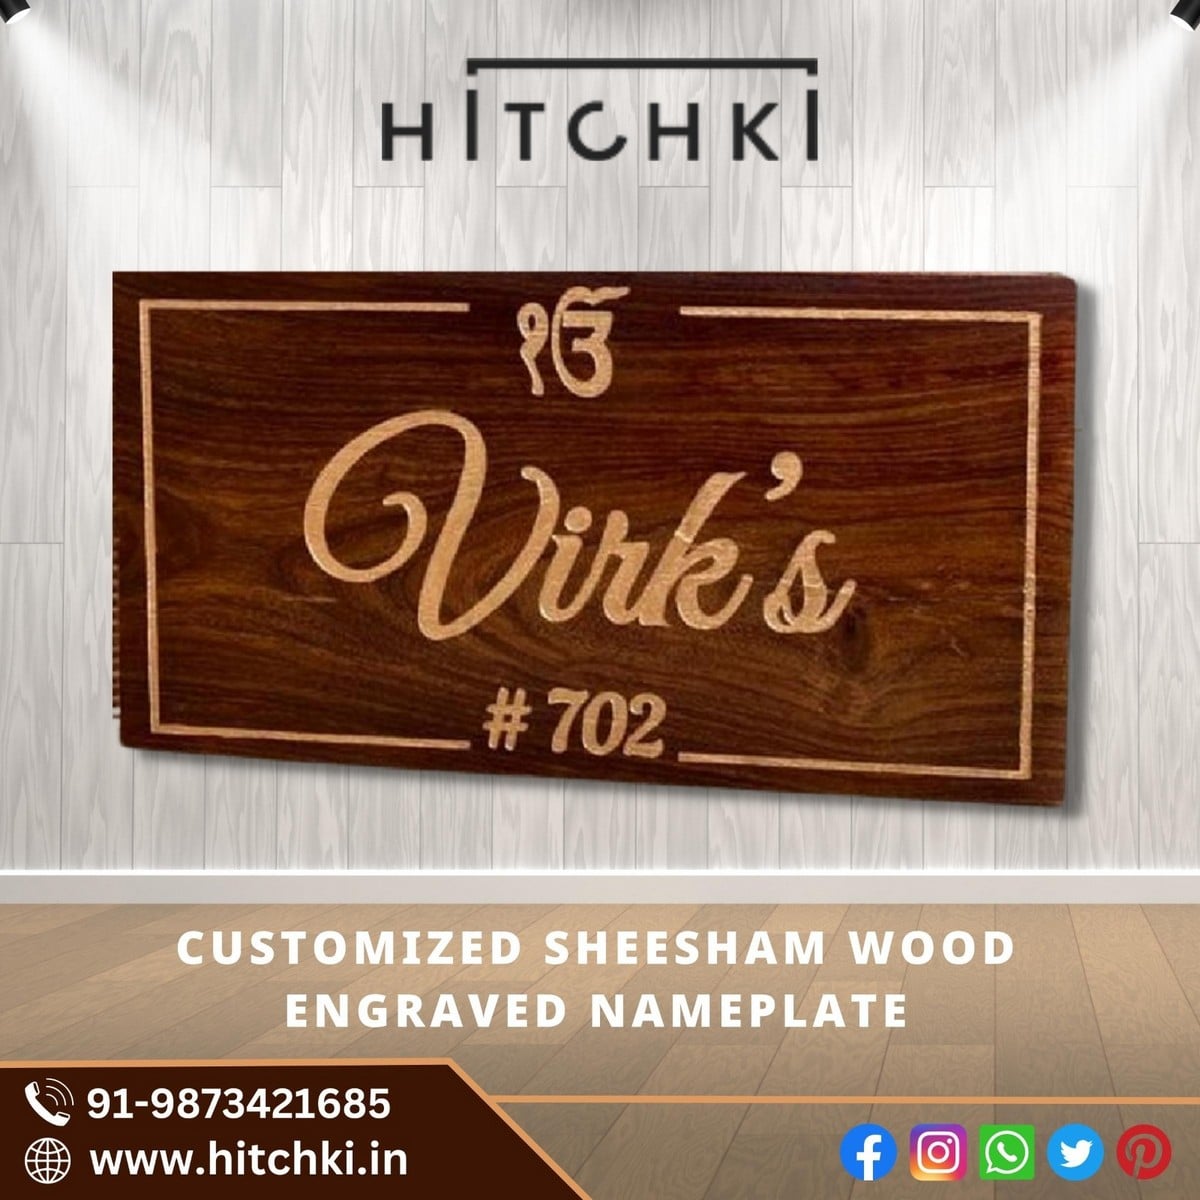 Customized Sheesham Wood Engraved Nameplate Online 1